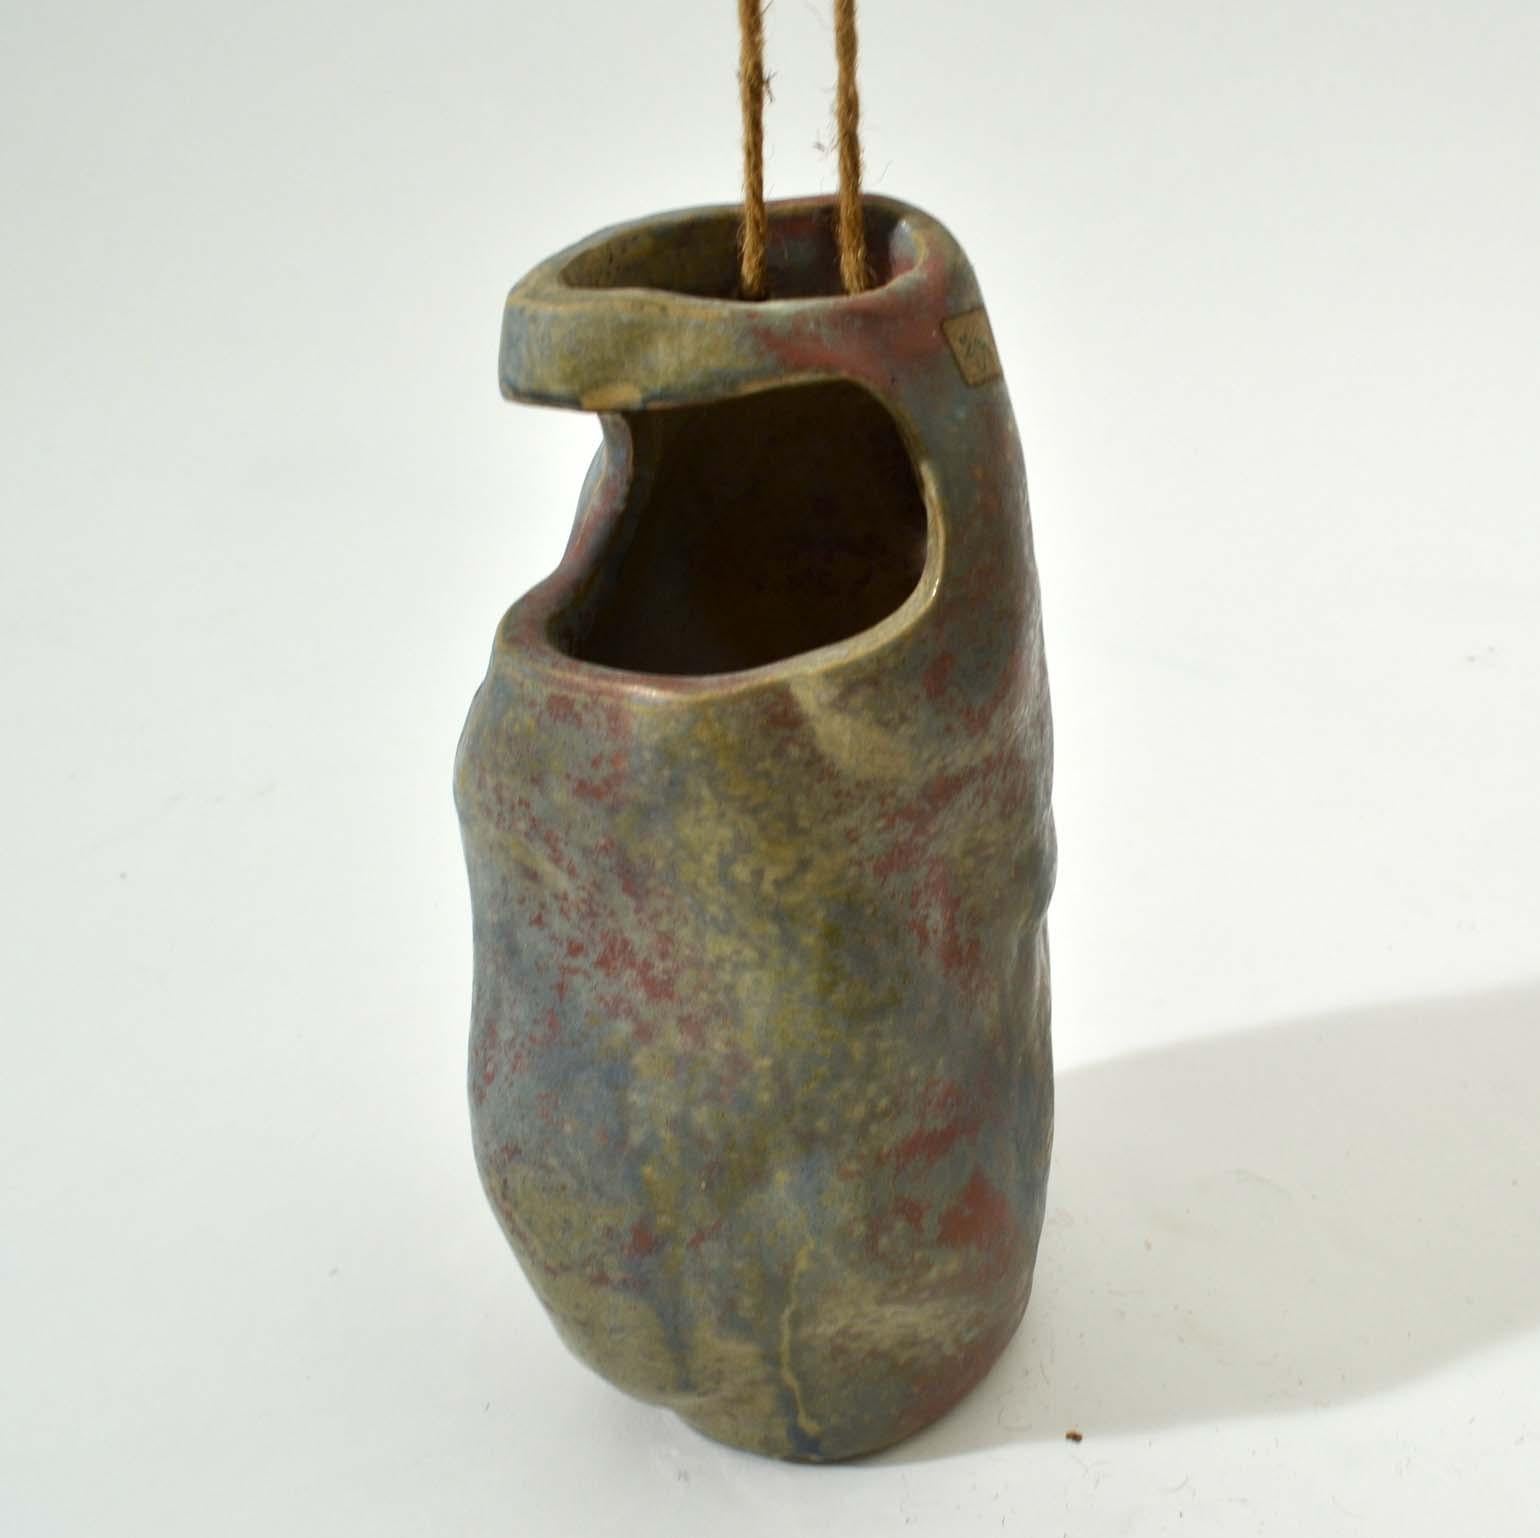 Series of Sculptural Studio Pottery 1960s Dutch Rock Shape Vases, De Olde Kruyk 5